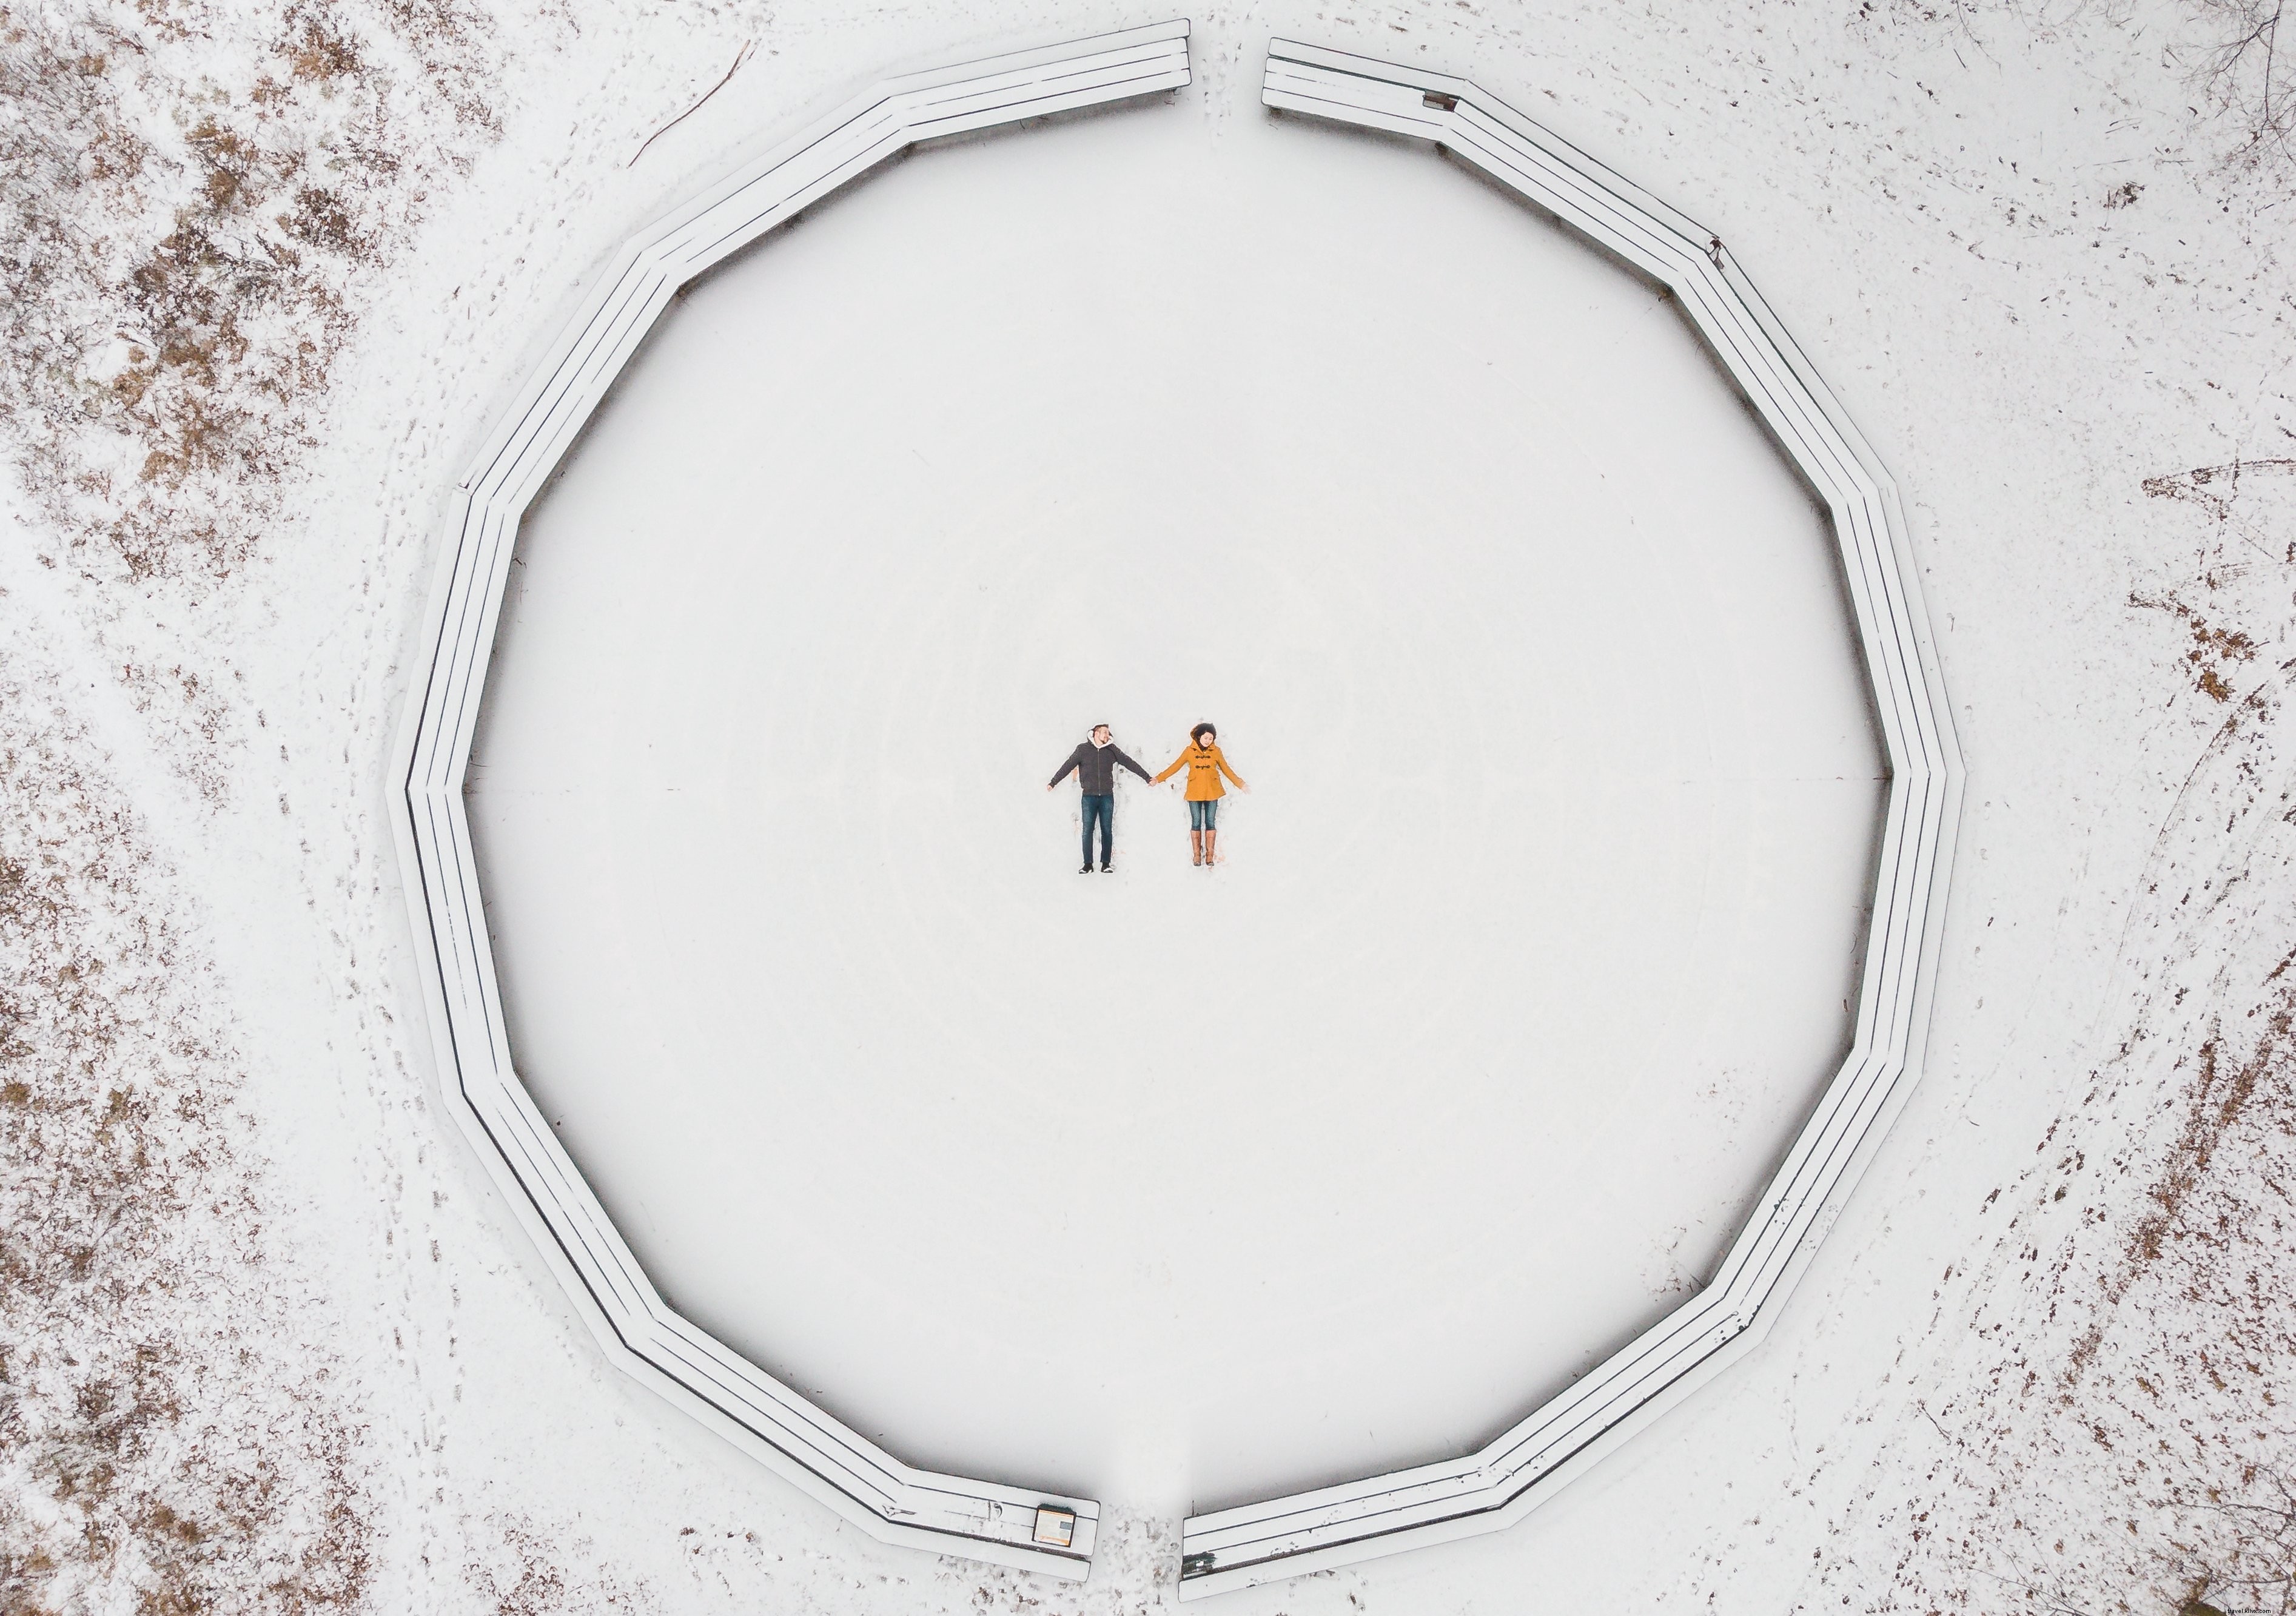 Veduta aerea di una coppia che fa foto di angeli di neve